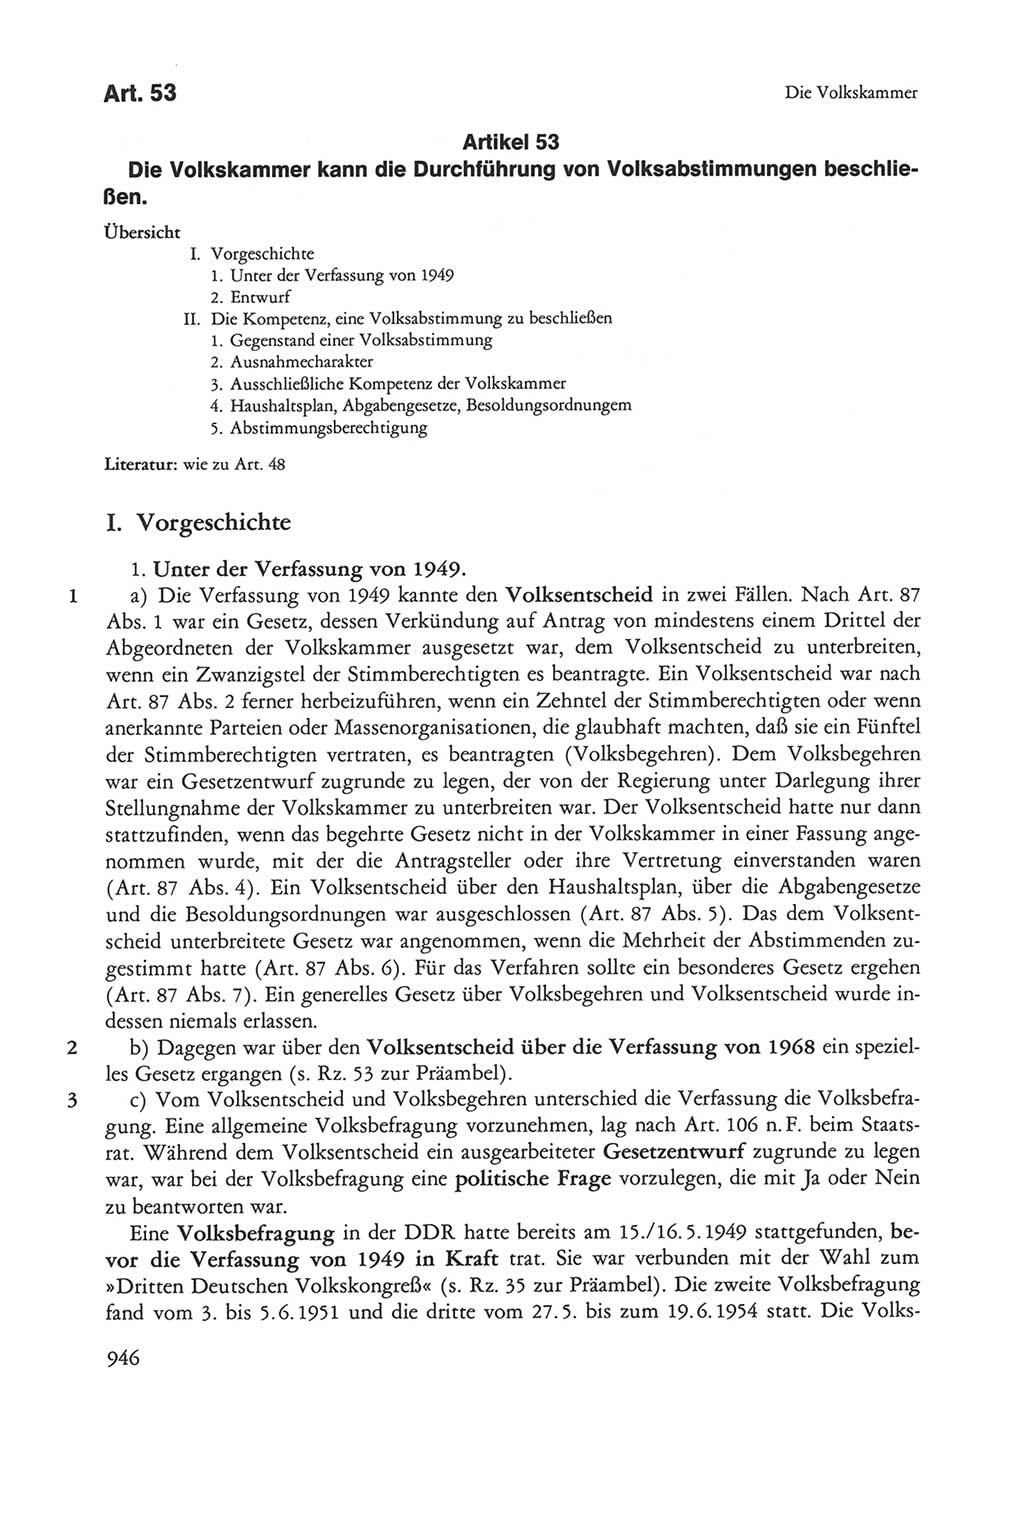 Die sozialistische Verfassung der Deutschen Demokratischen Republik (DDR), Kommentar 1982, Seite 946 (Soz. Verf. DDR Komm. 1982, S. 946)